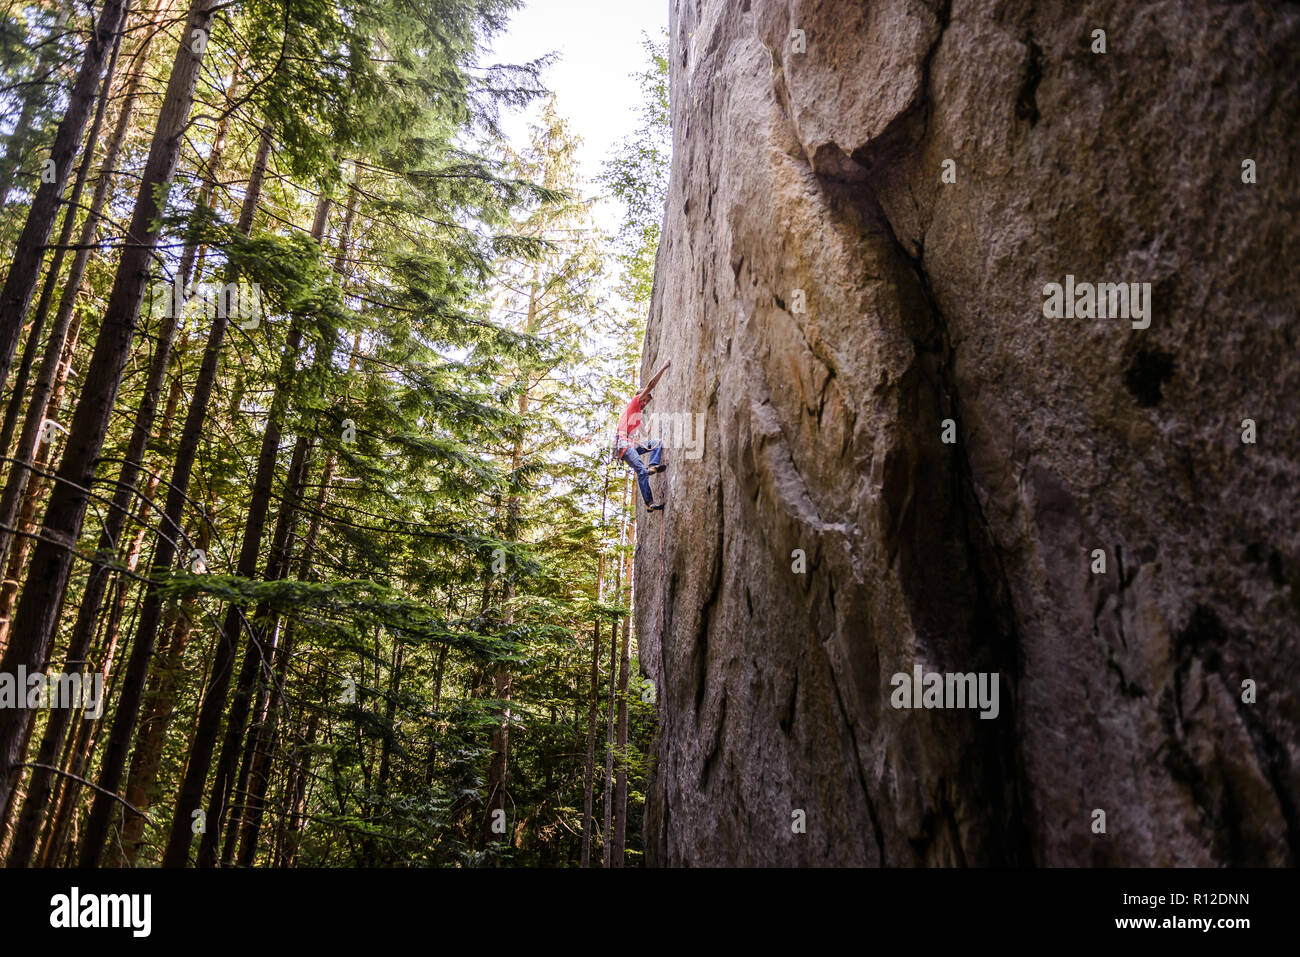 Rock climber scaling rock face à proximité d'arbres, Squamish, Canada Banque D'Images